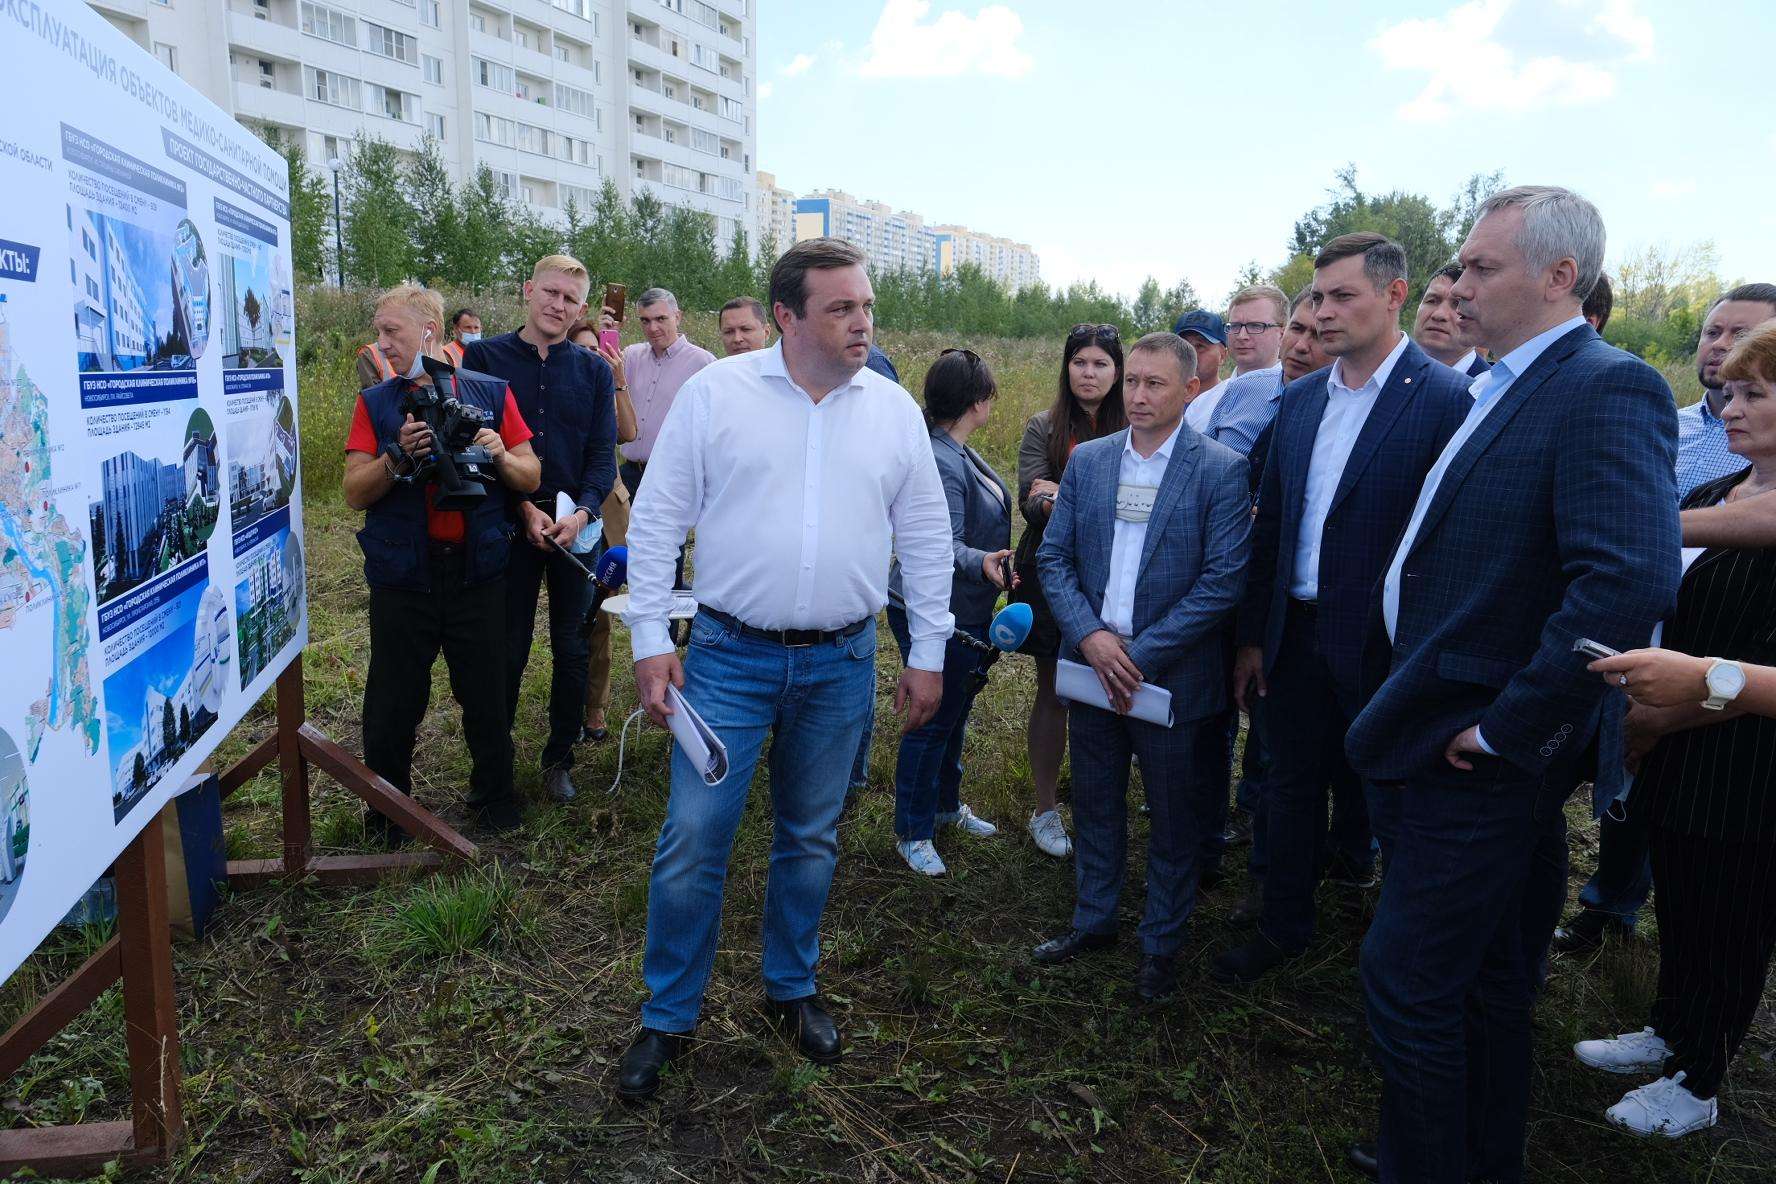 Андрей Травников: «Работы по строительству семи поликлиник в Новосибирске начнутся в 2020 году»